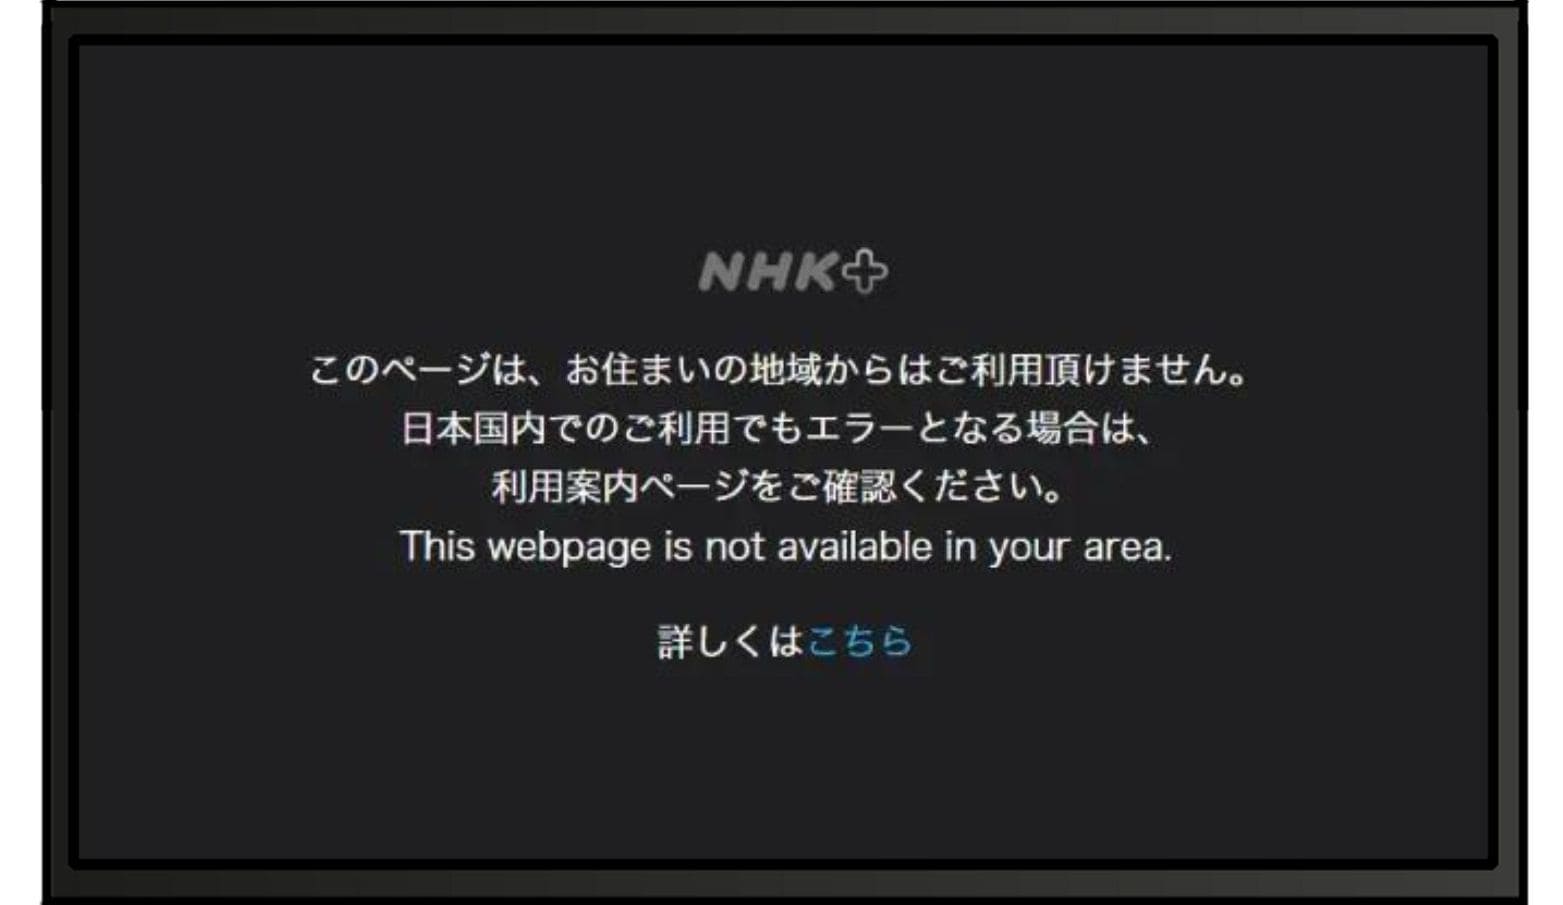 【NHKプラス】「このページは、お住まいの地域からはご利用頂けません」というエラー表示